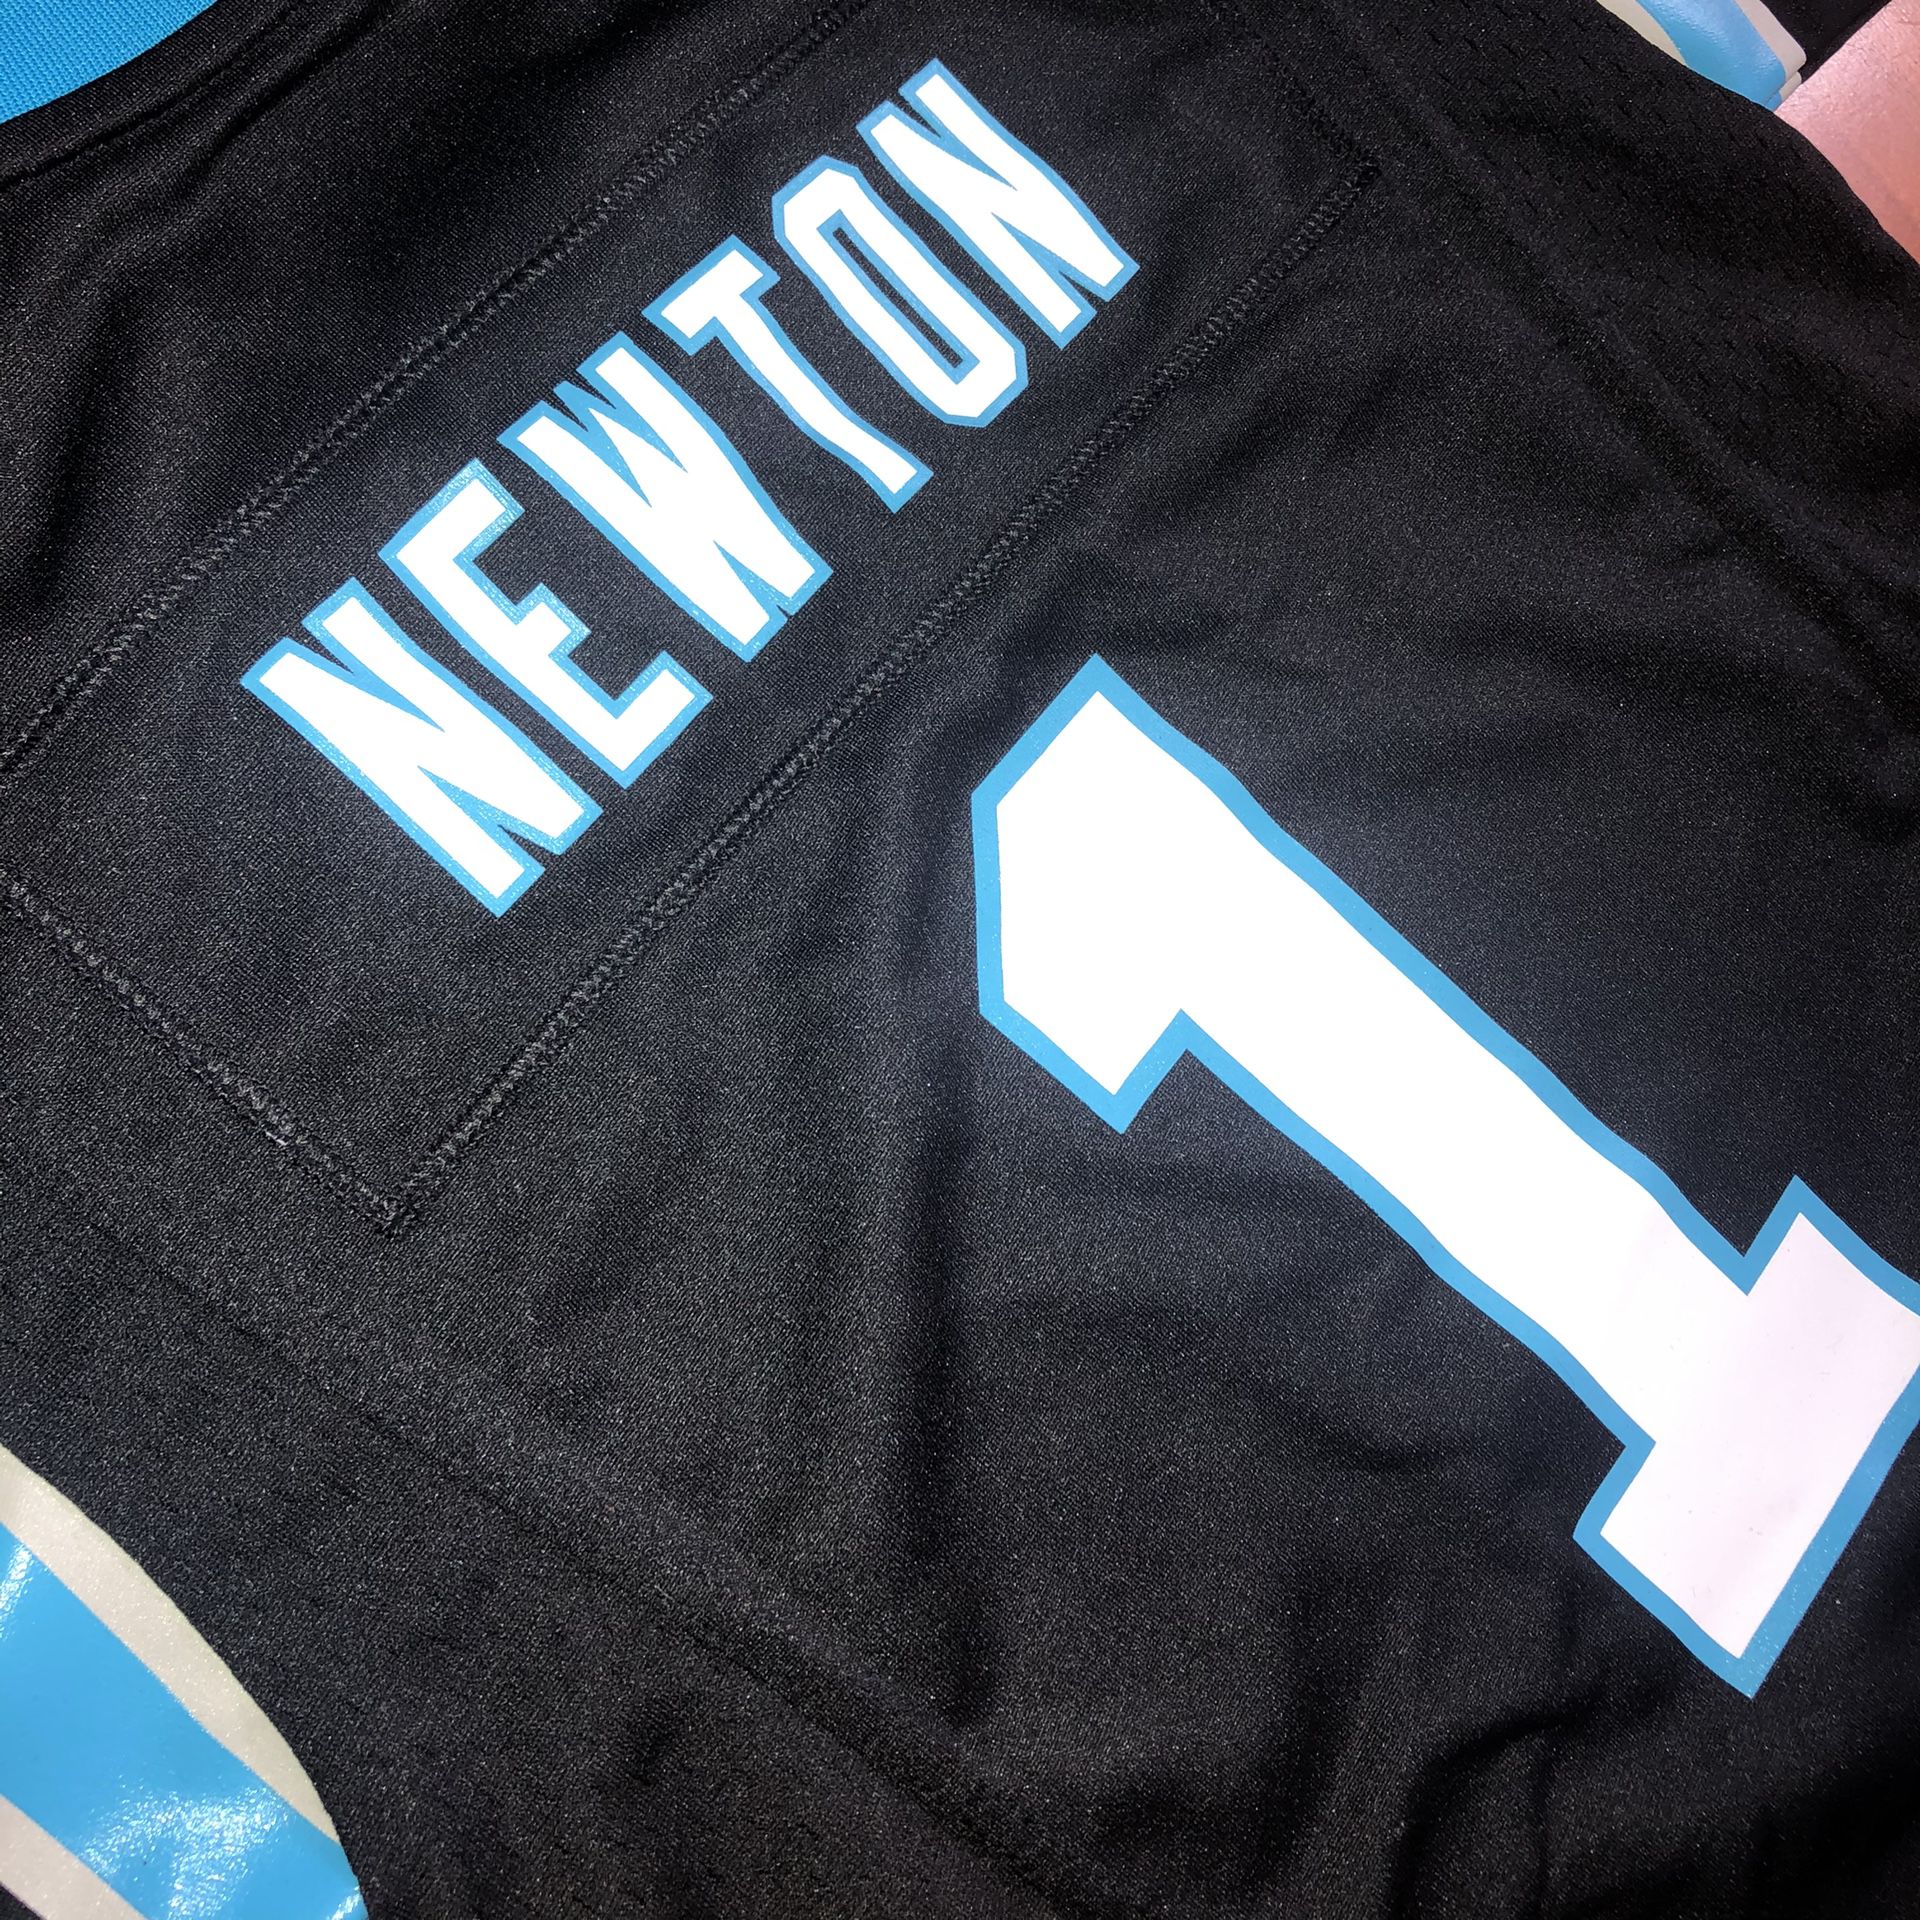 New Youth Nike Carolina Panthers Cam Newton Jersey Size S